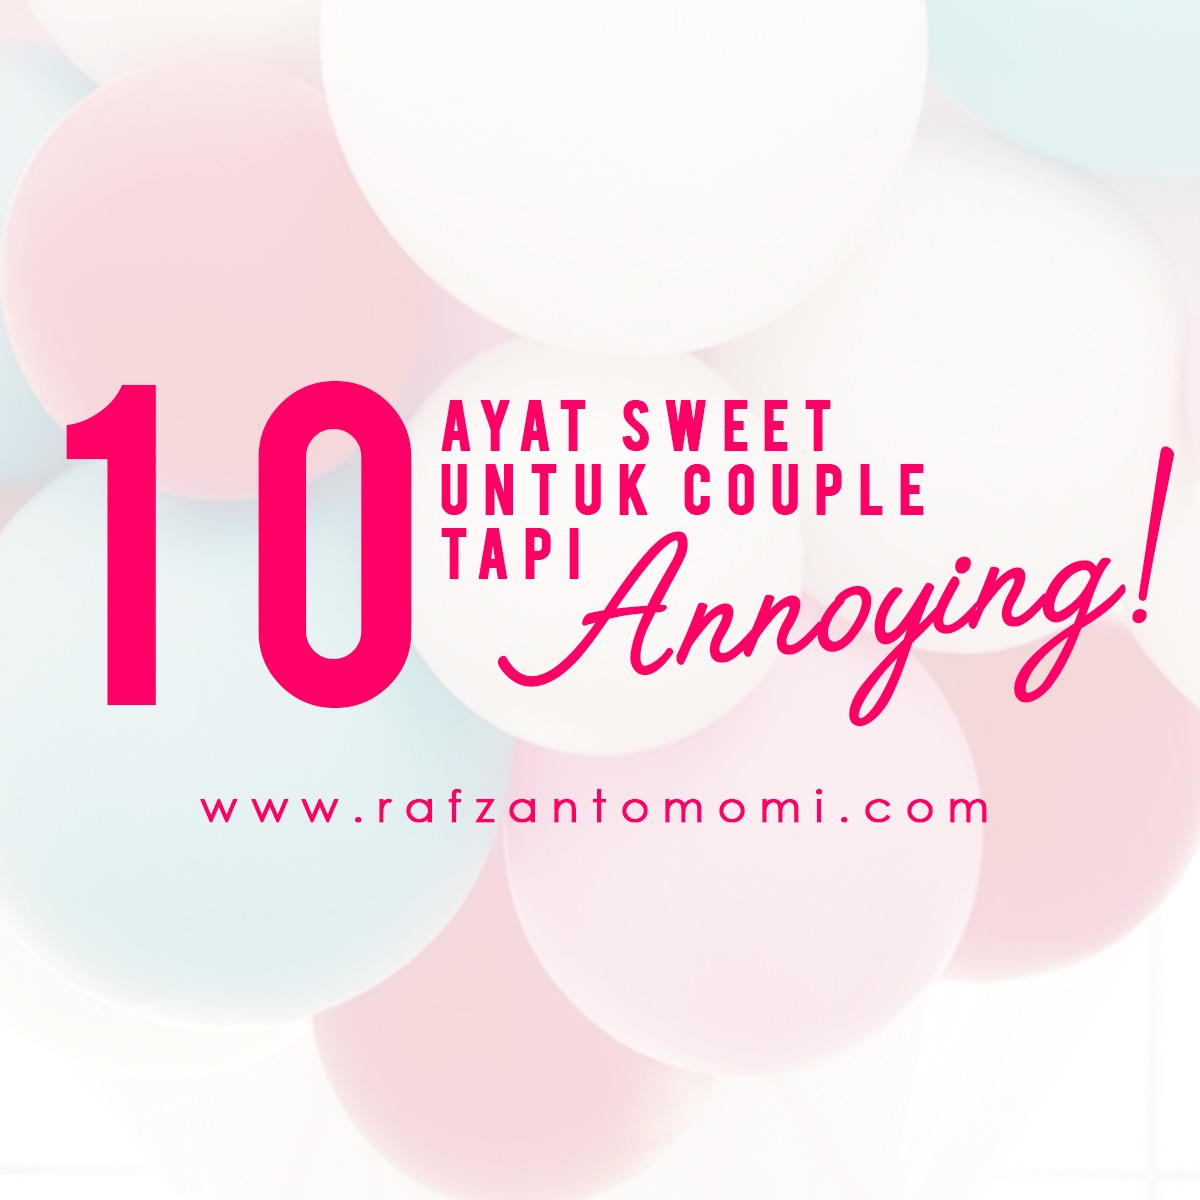 10 Ayat Sweet Untuk Couple Tapi Annoying!